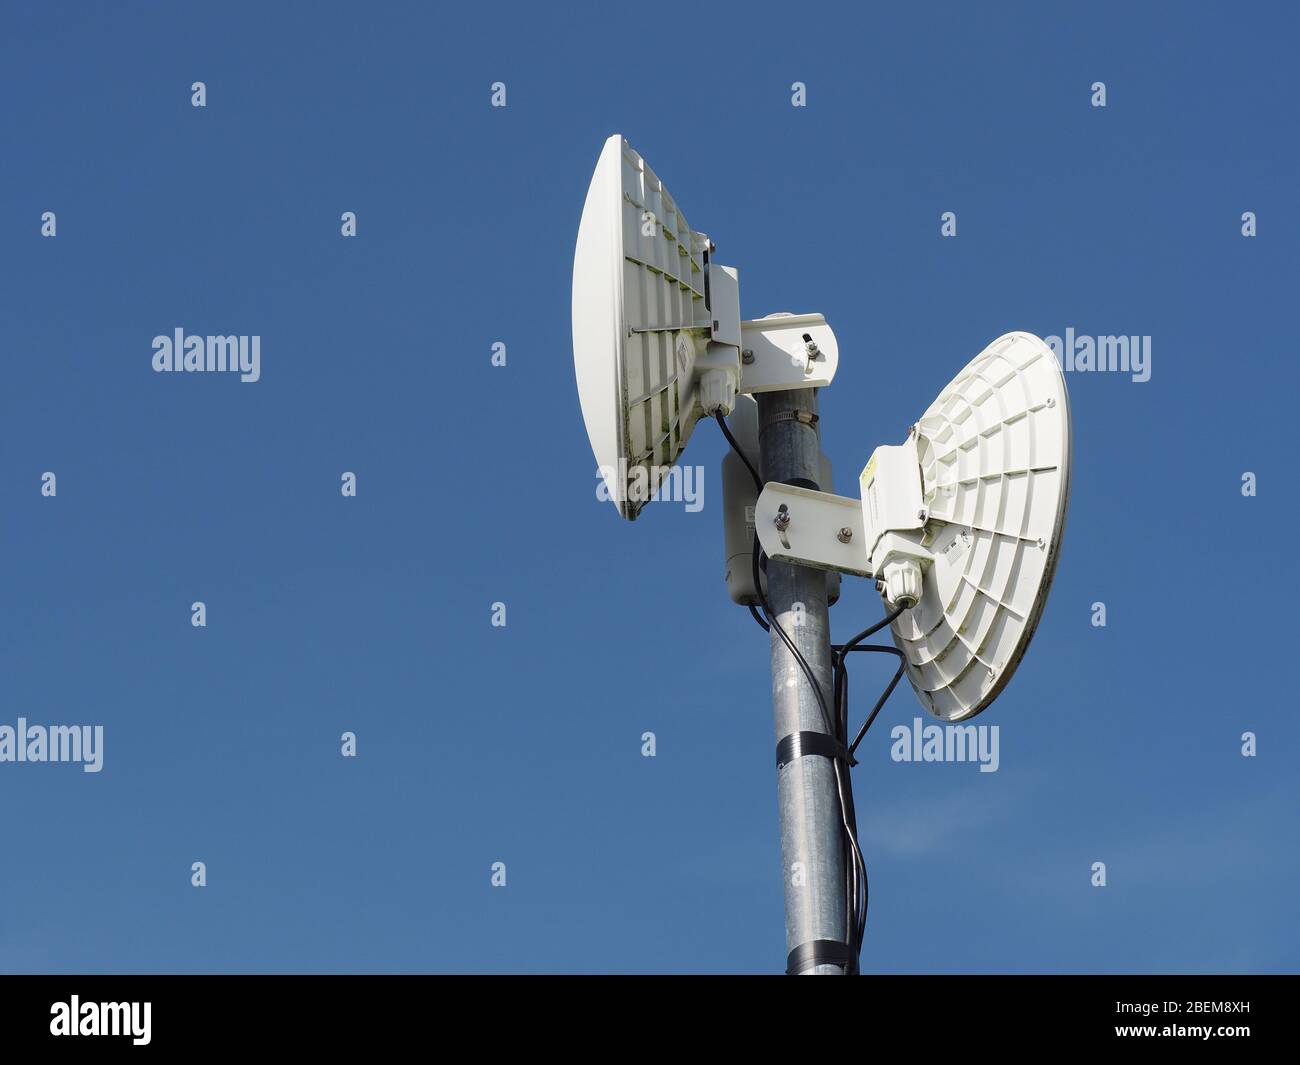 Antenne/router del servizio Internet wireless a banda larga rurale. Piatti per backhaul a montanti sulla dorsale della rete, antenne verticali per locali locali. Foto Stock